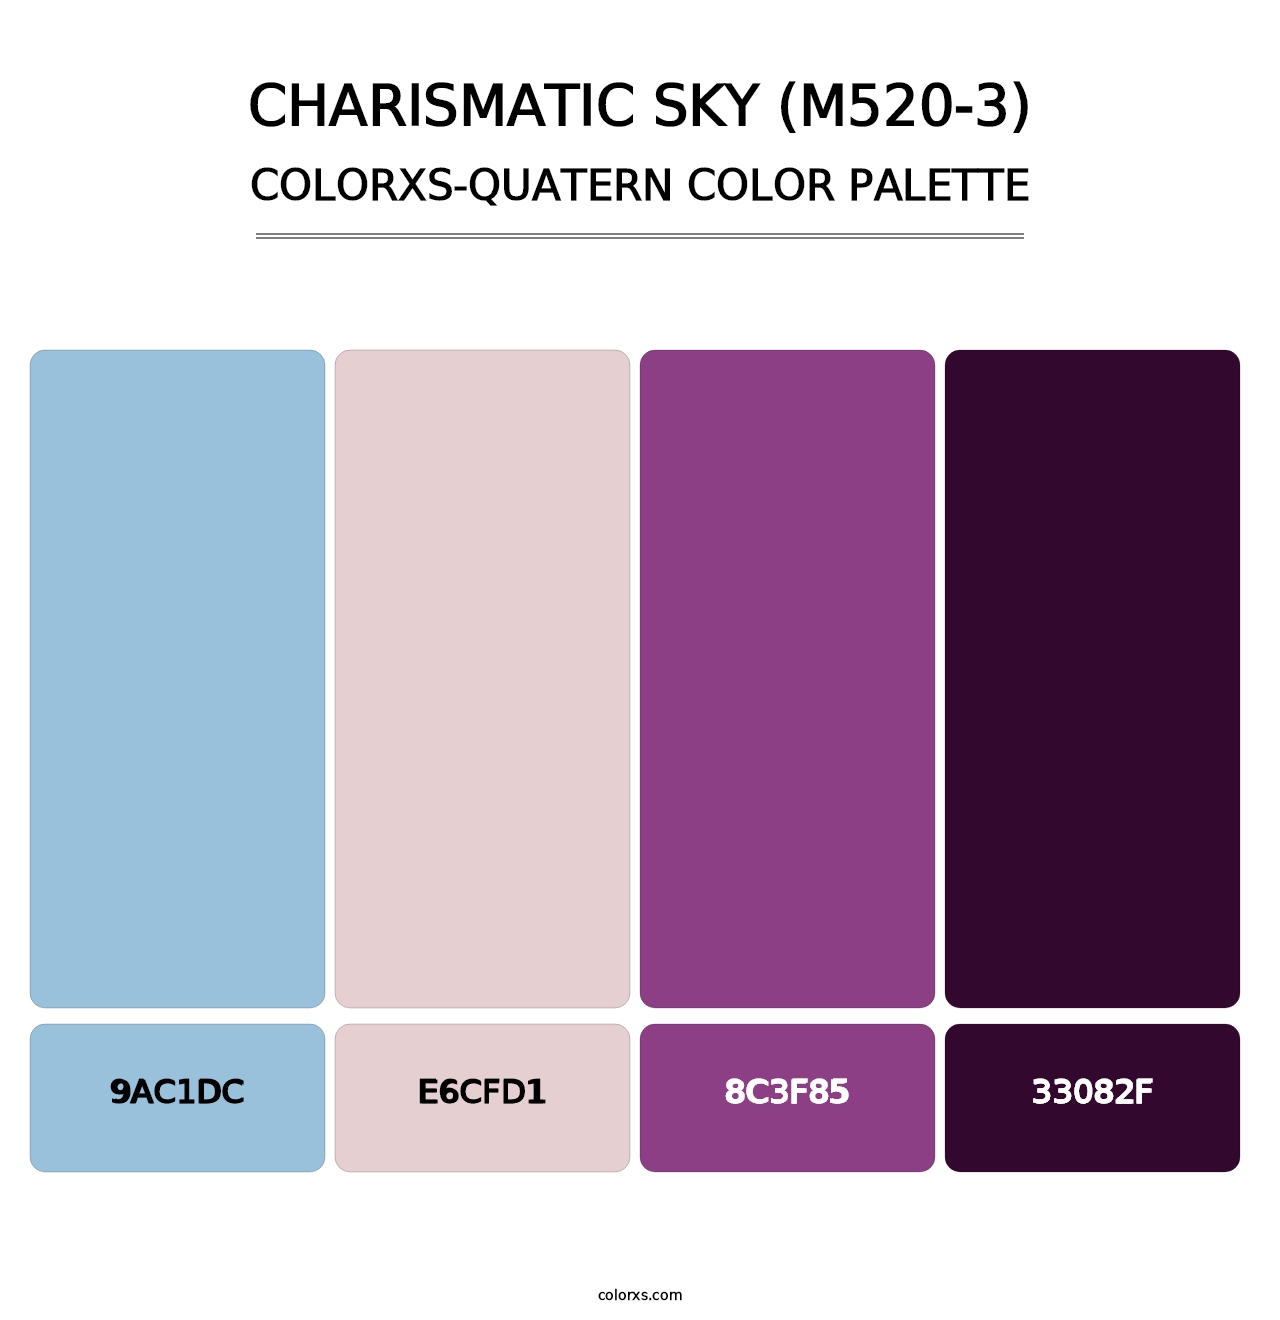 Charismatic Sky (M520-3) - Colorxs Quatern Palette